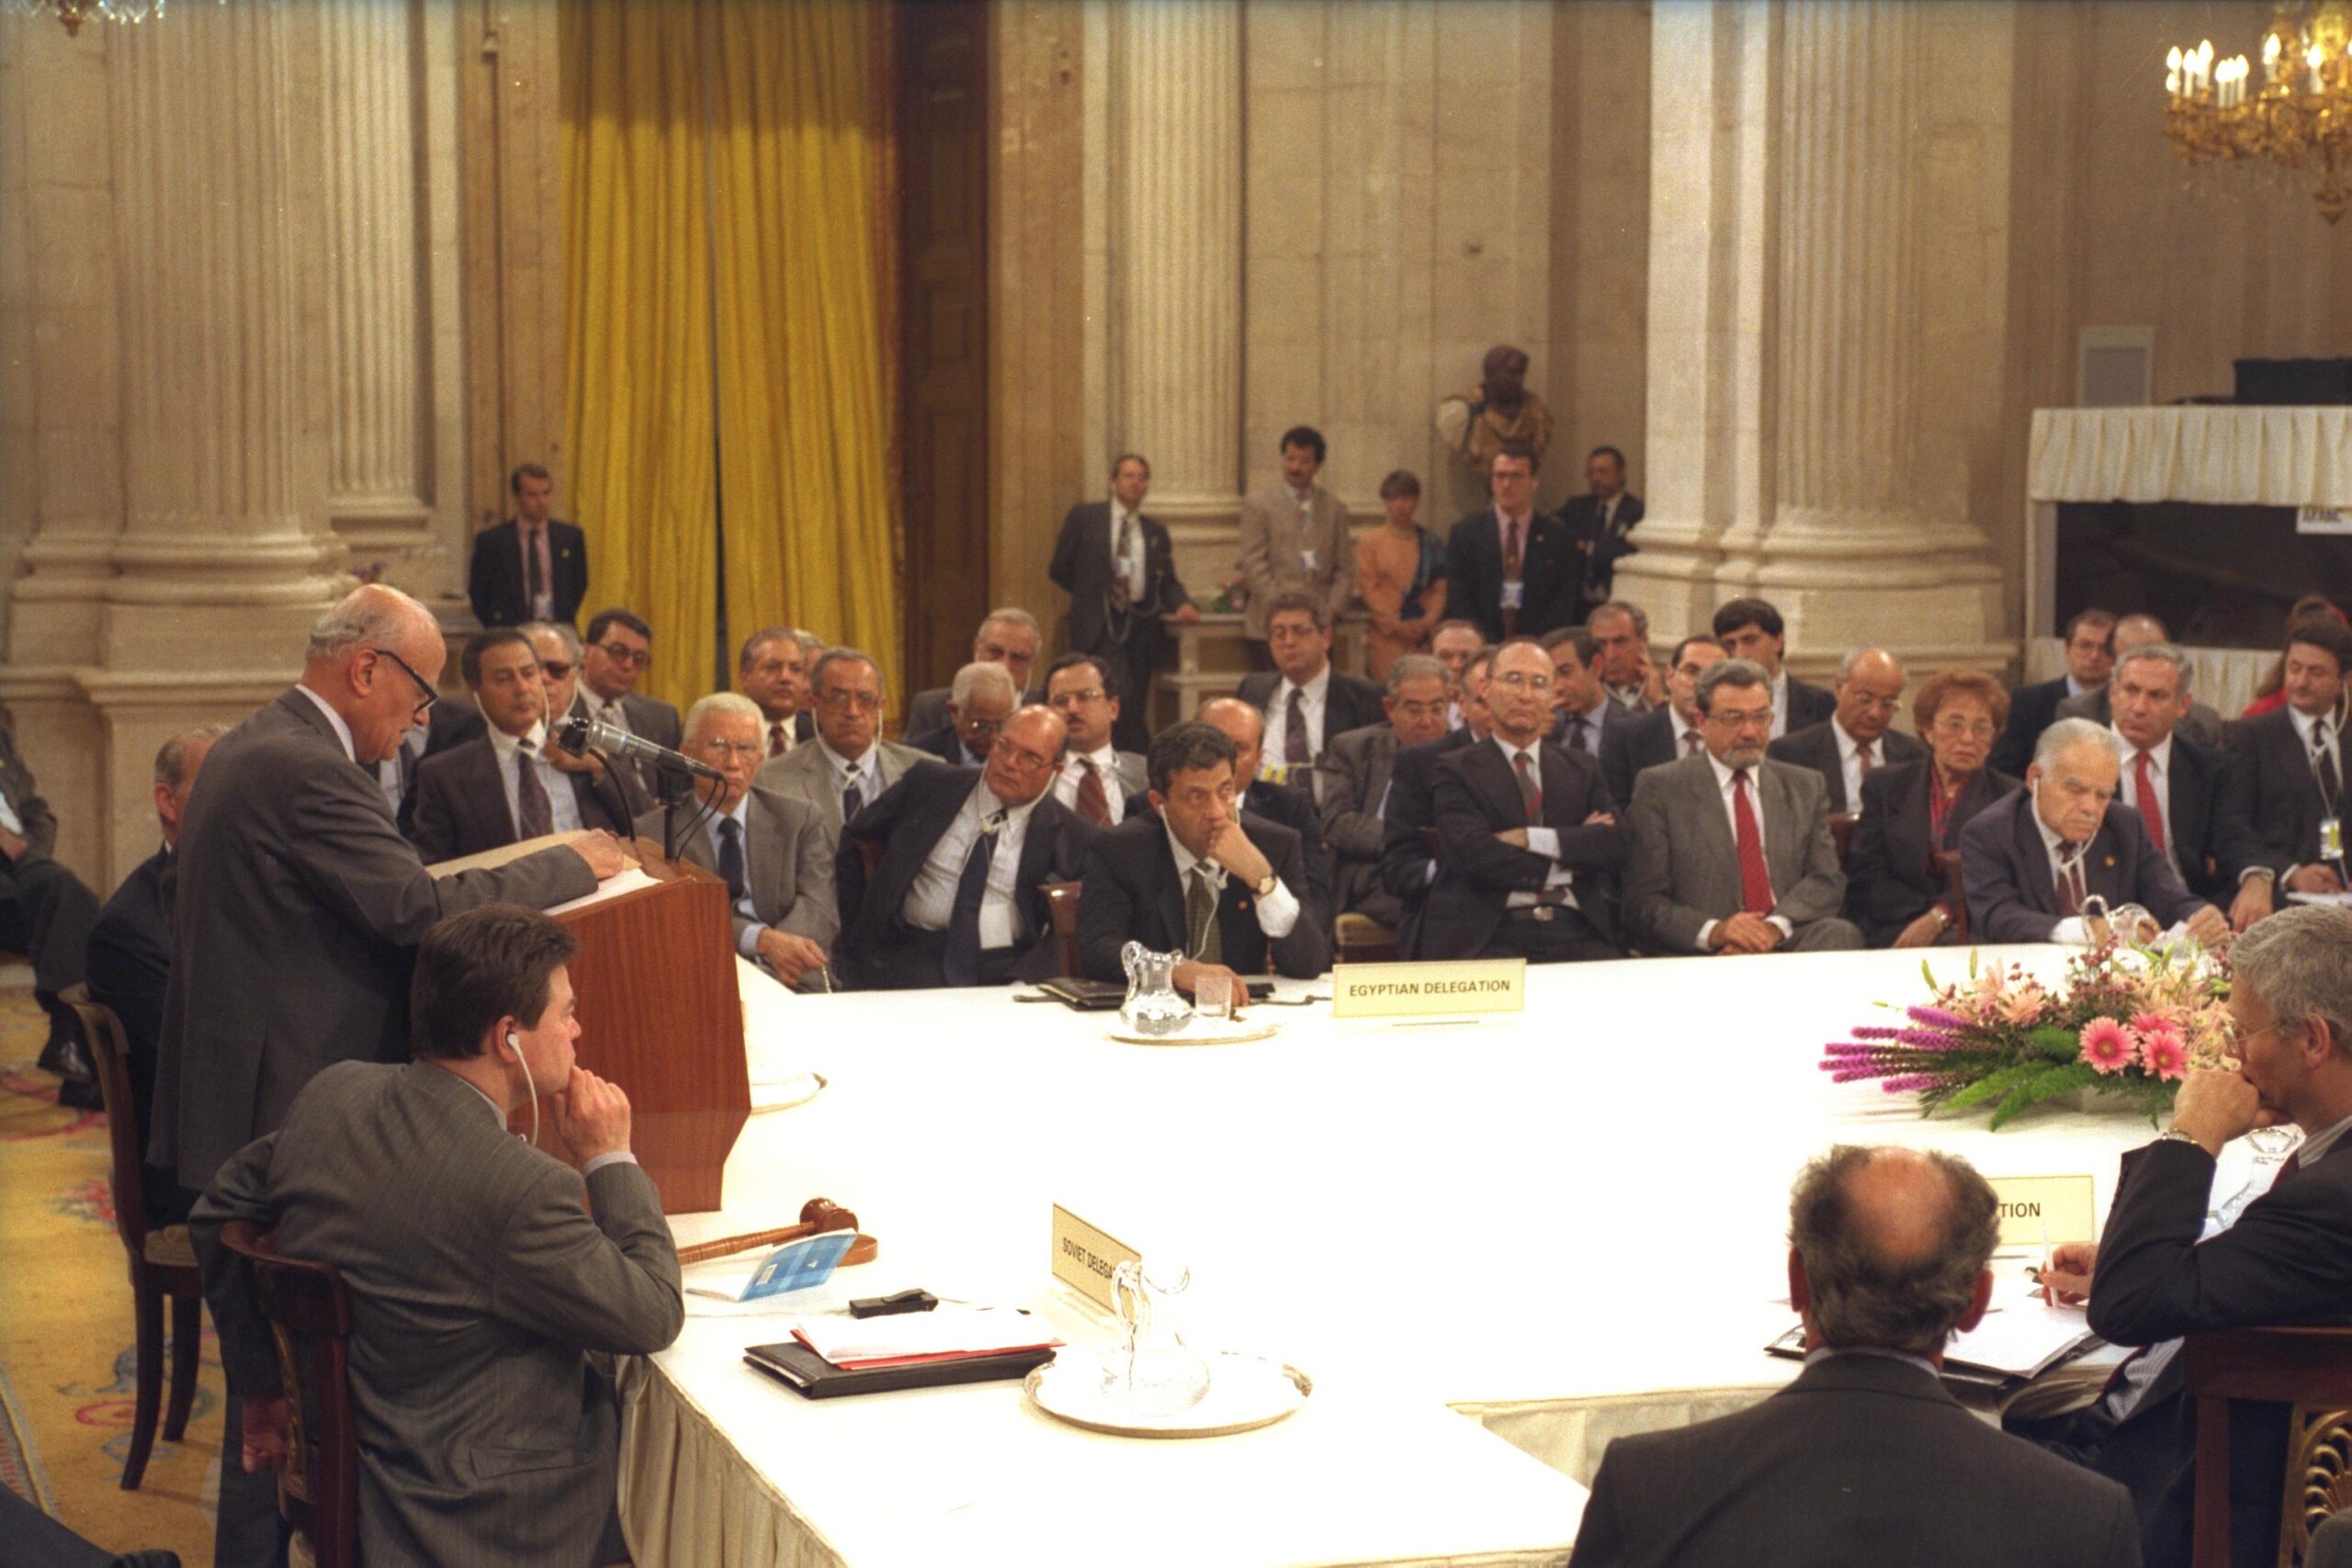 ד"ר חיידר עבד א-שאפי נושא דברים בוועידת מדריד, ב-30 באוקטובר 1991 (צילום: משה מילנר/לע"מ)